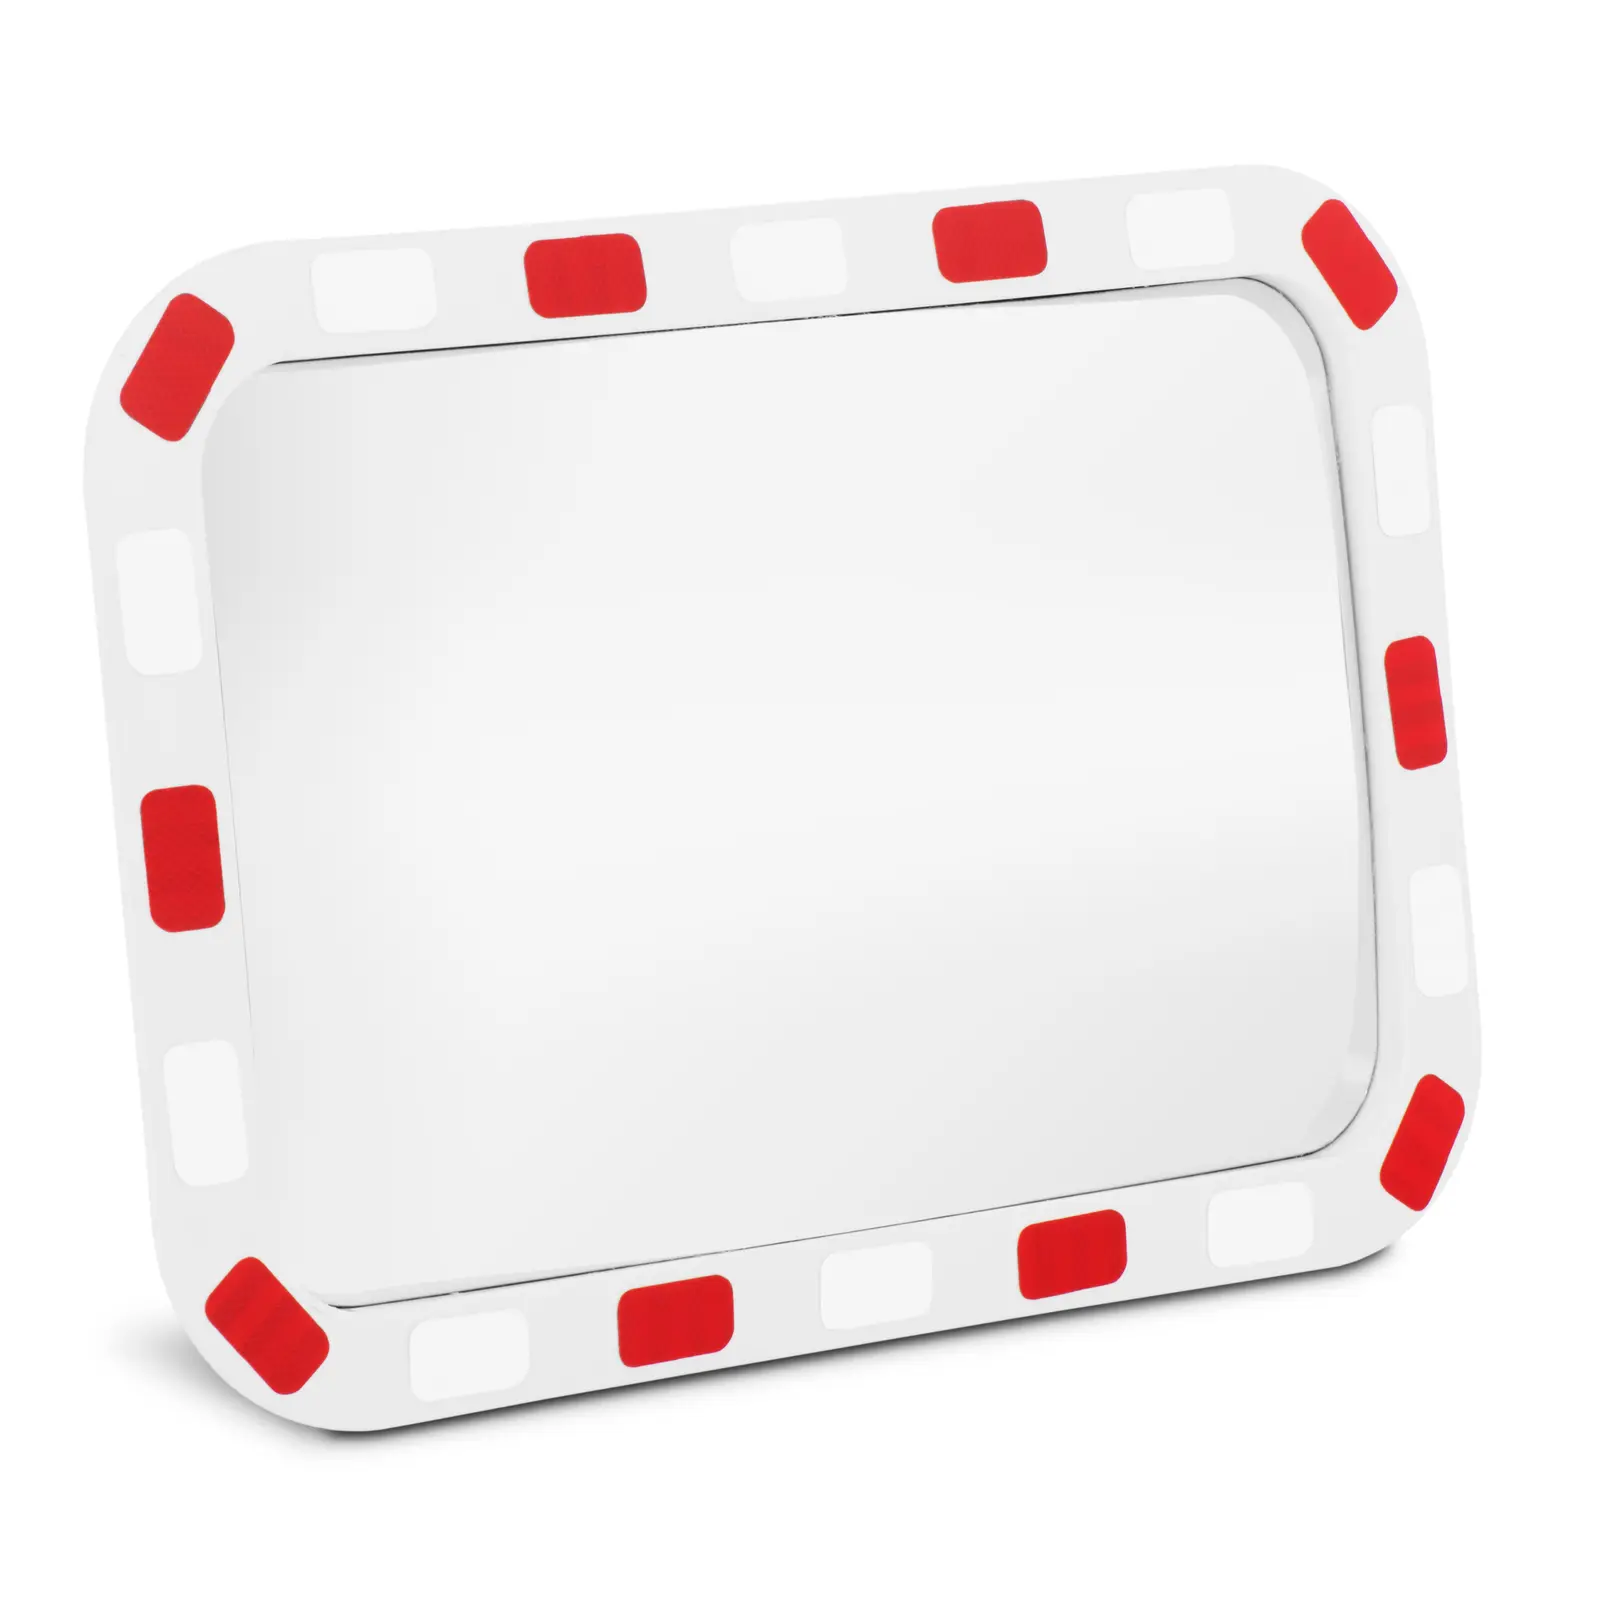 Καθρέφτης κυκλοφορίας - 40 x 80 x 8 cm - 130° - ορθογώνιος